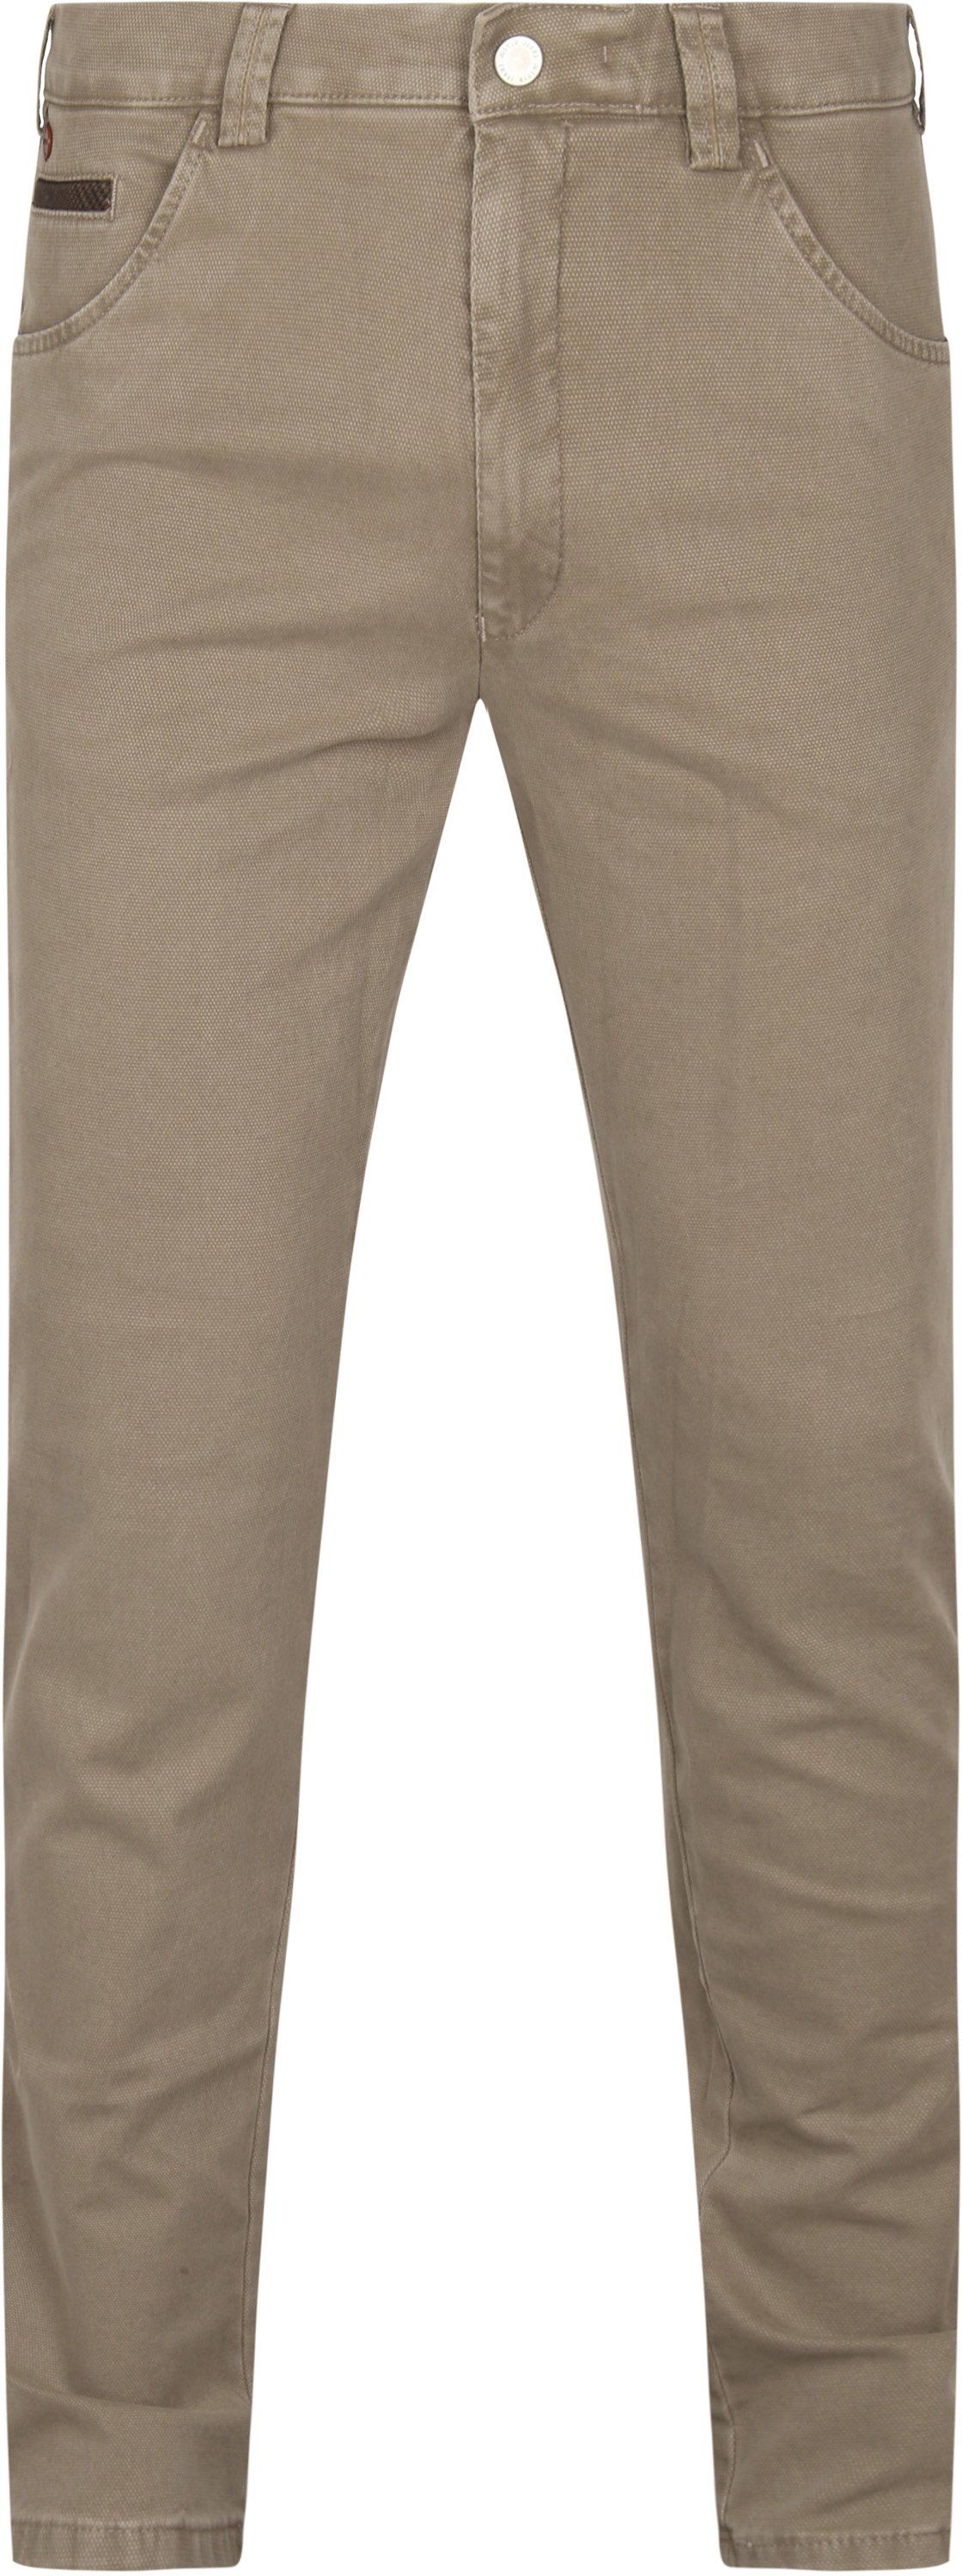 Meyer Dublin Pants Beige size W 34